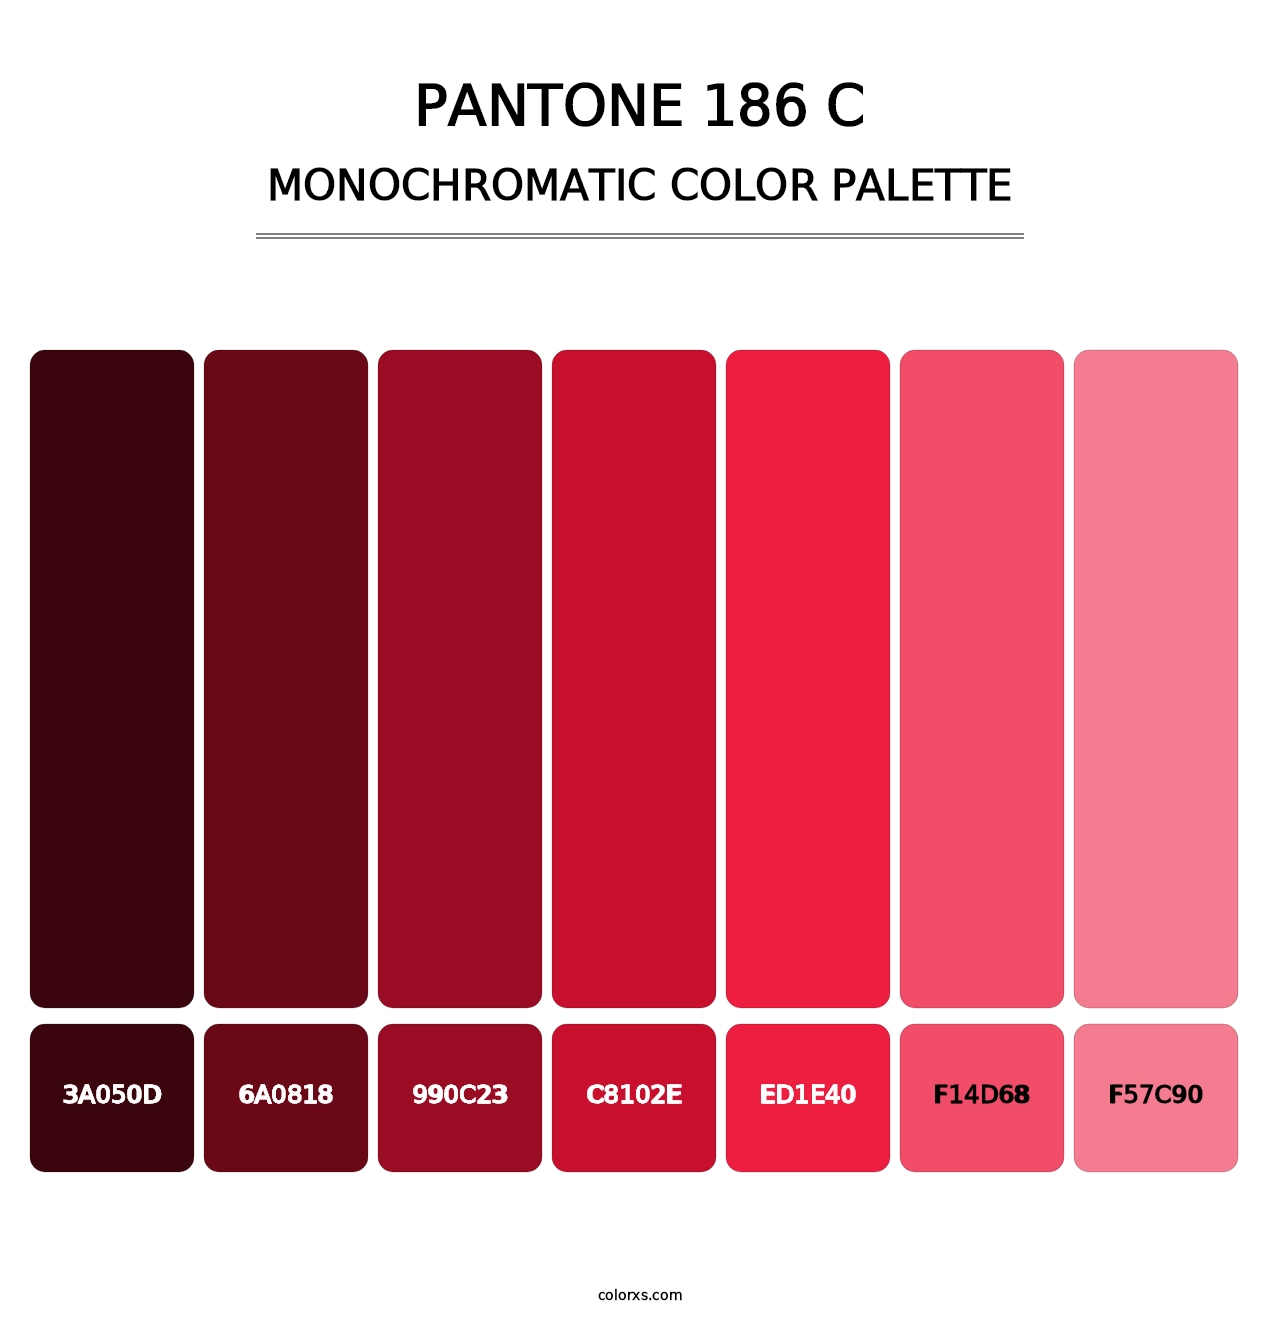 PANTONE 186 C - Monochromatic Color Palette